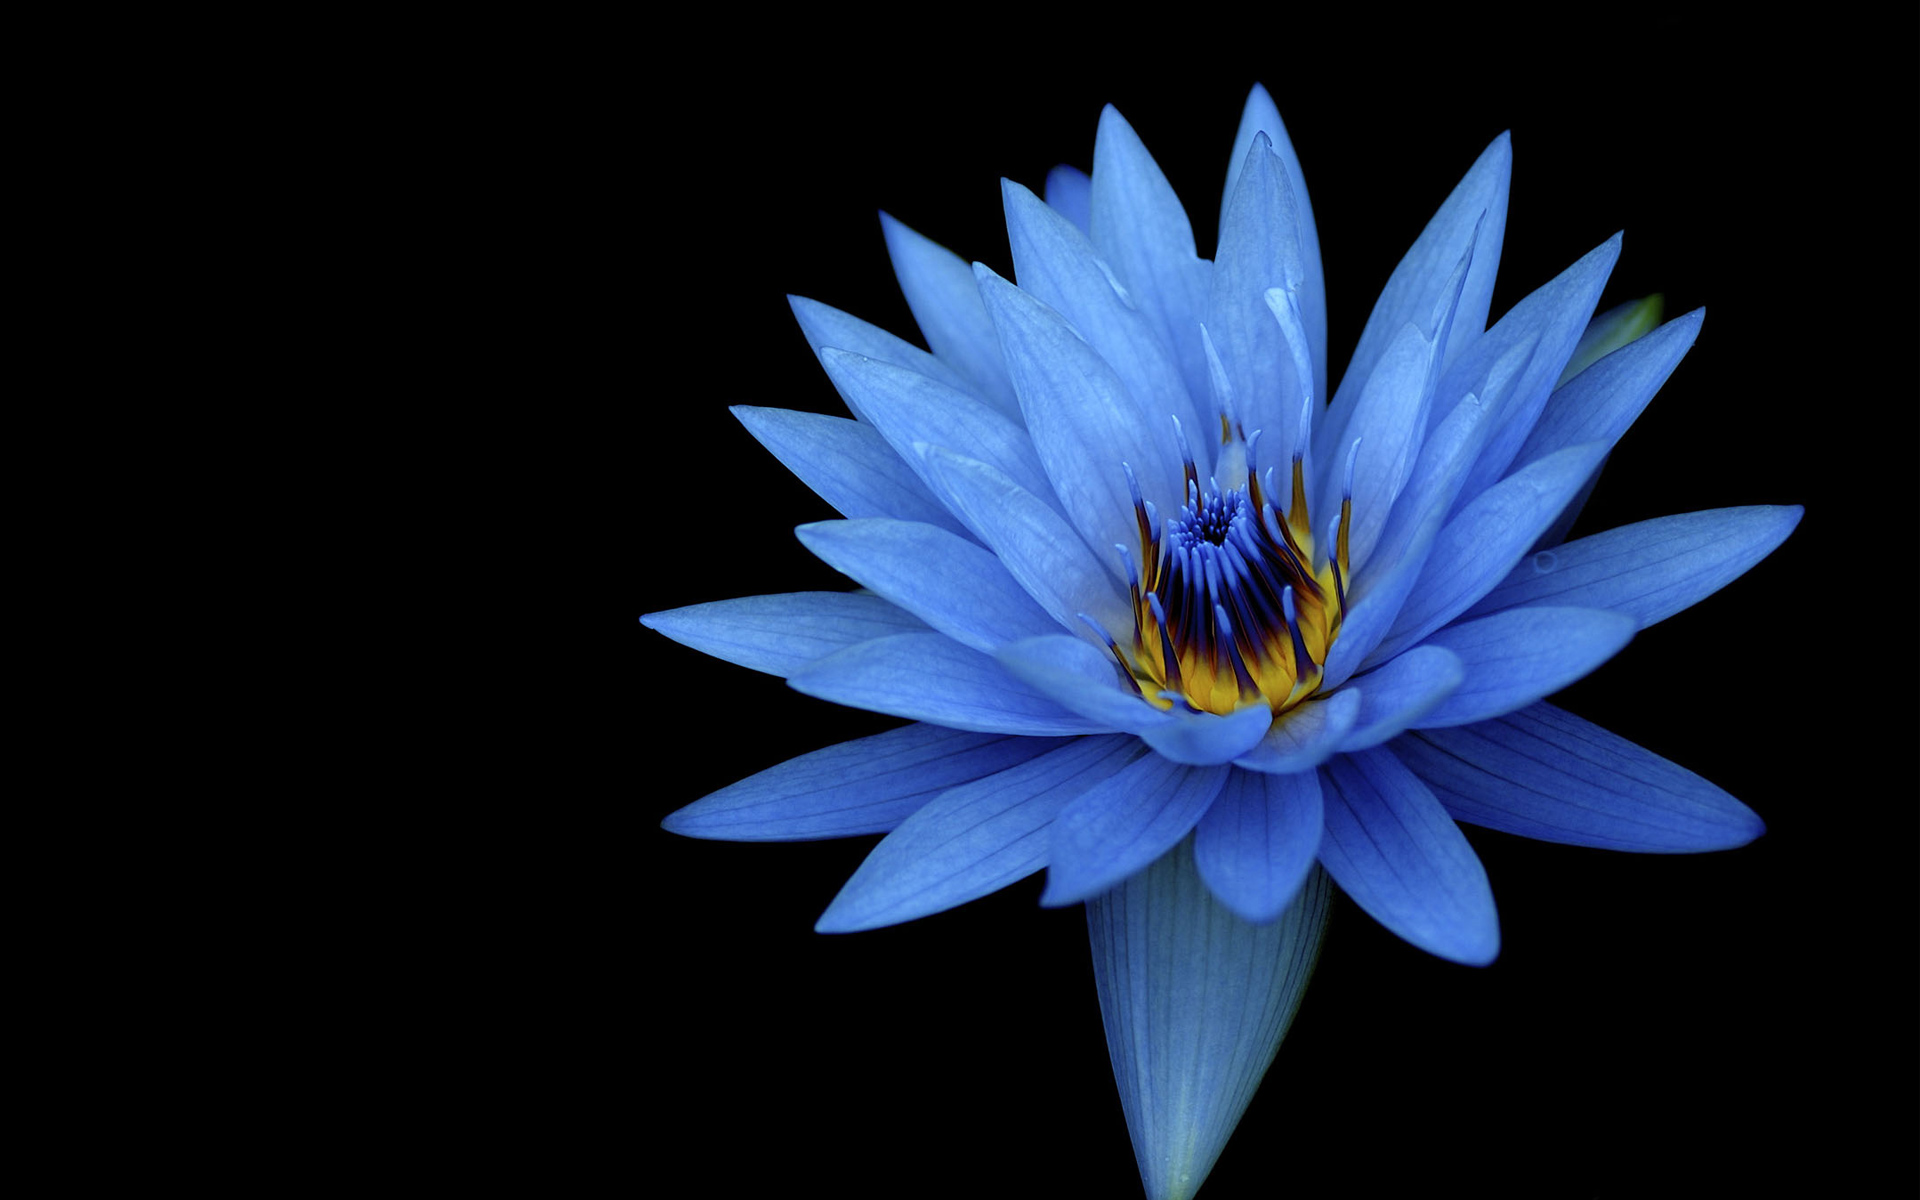 Sony Xperia Z Stock Blue Flower978156485 - Sony Xperia Z Stock Blue Flower - Xperia, Stock, Sony, Poppy, flower, blue